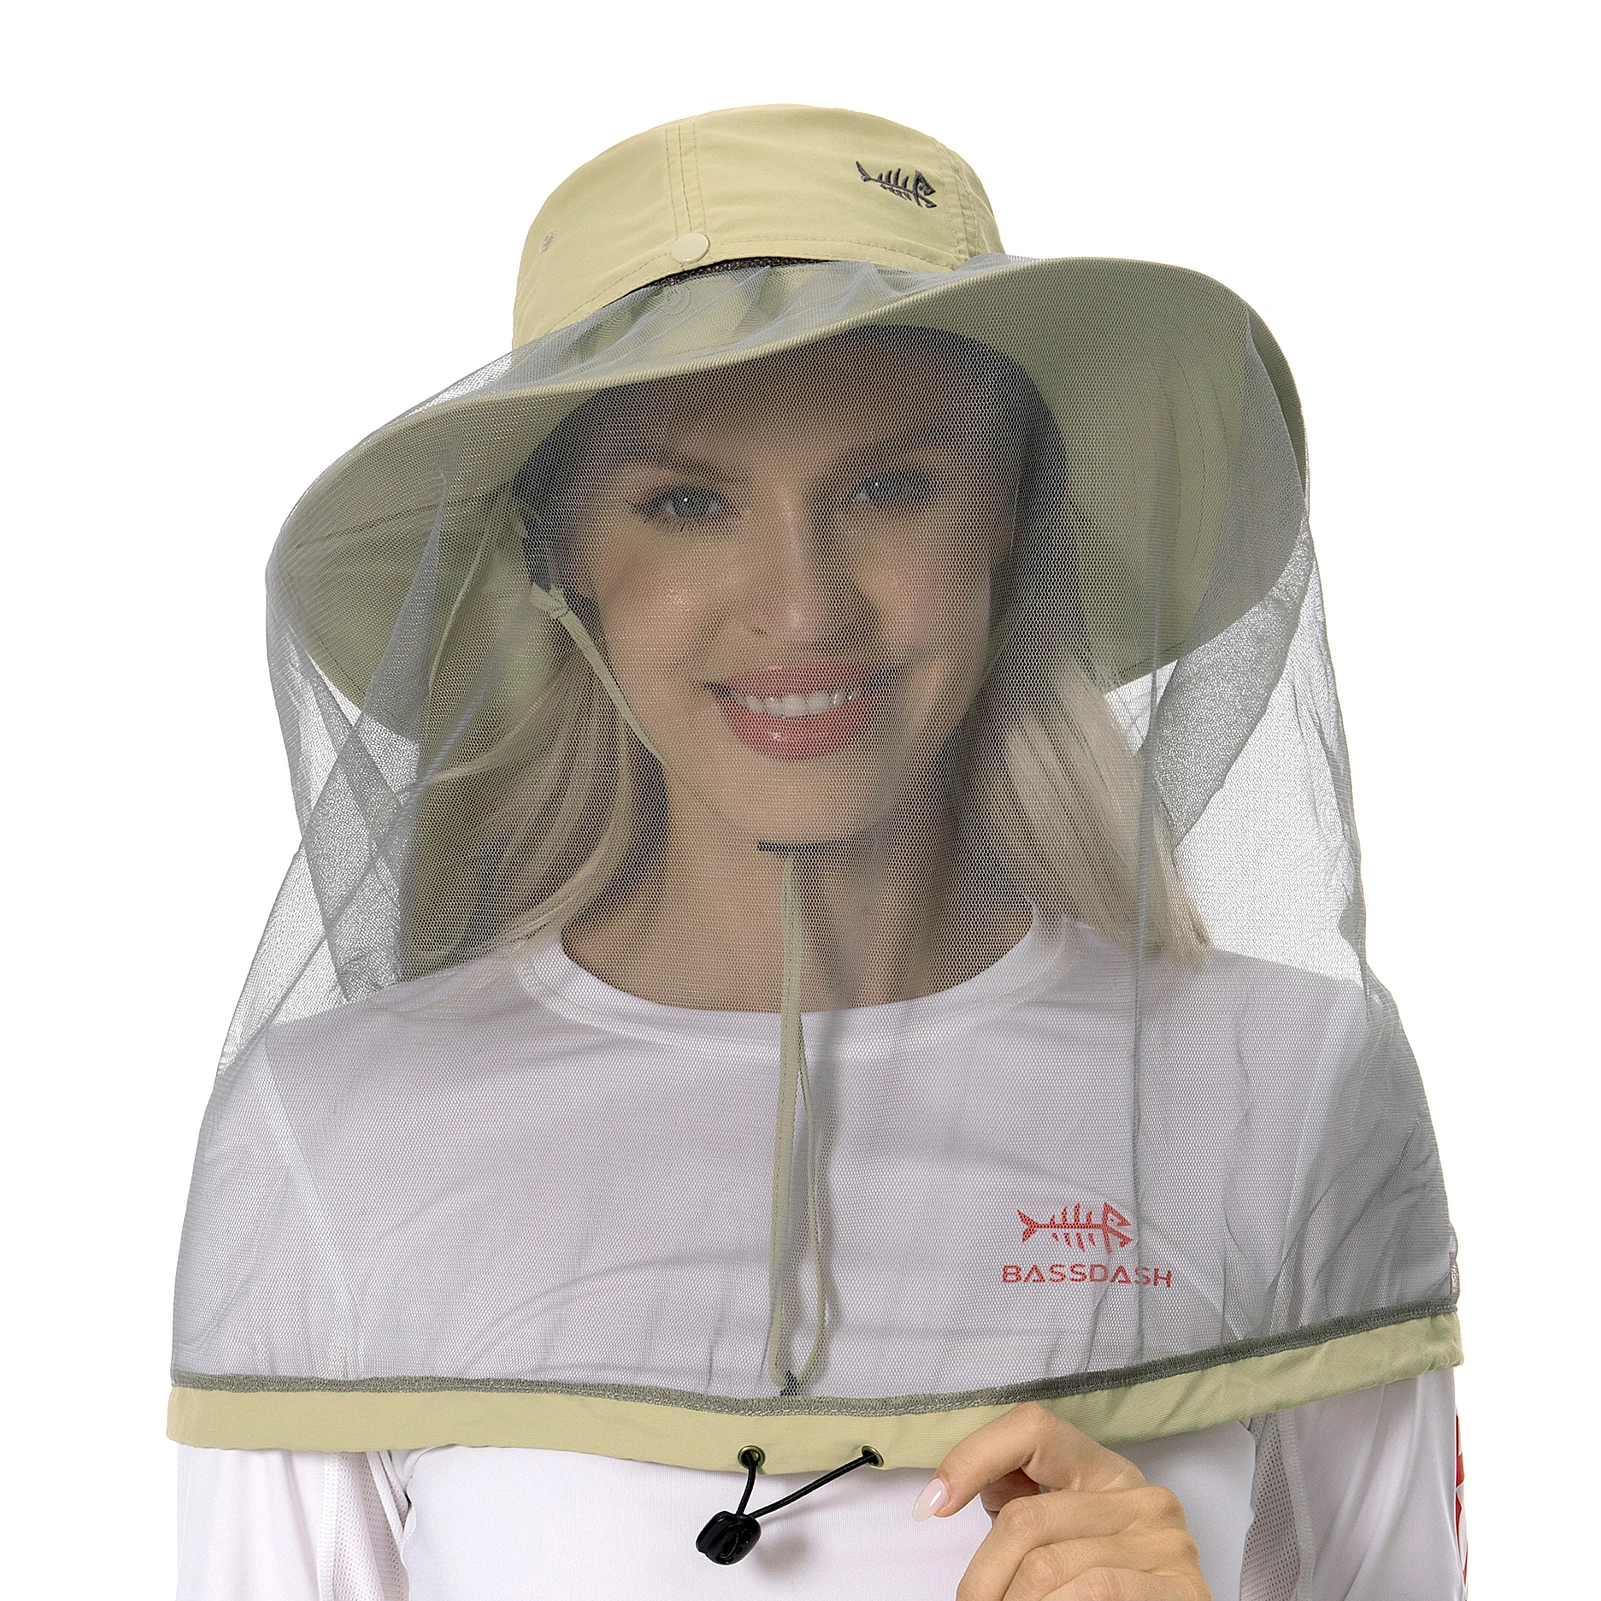 Bassdash UPF 50 + Mosquito sombrero para el sol con red oculta para la cabeza y solapa para el cuello para hombres mujeres pesca al aire libre senderismo Camping